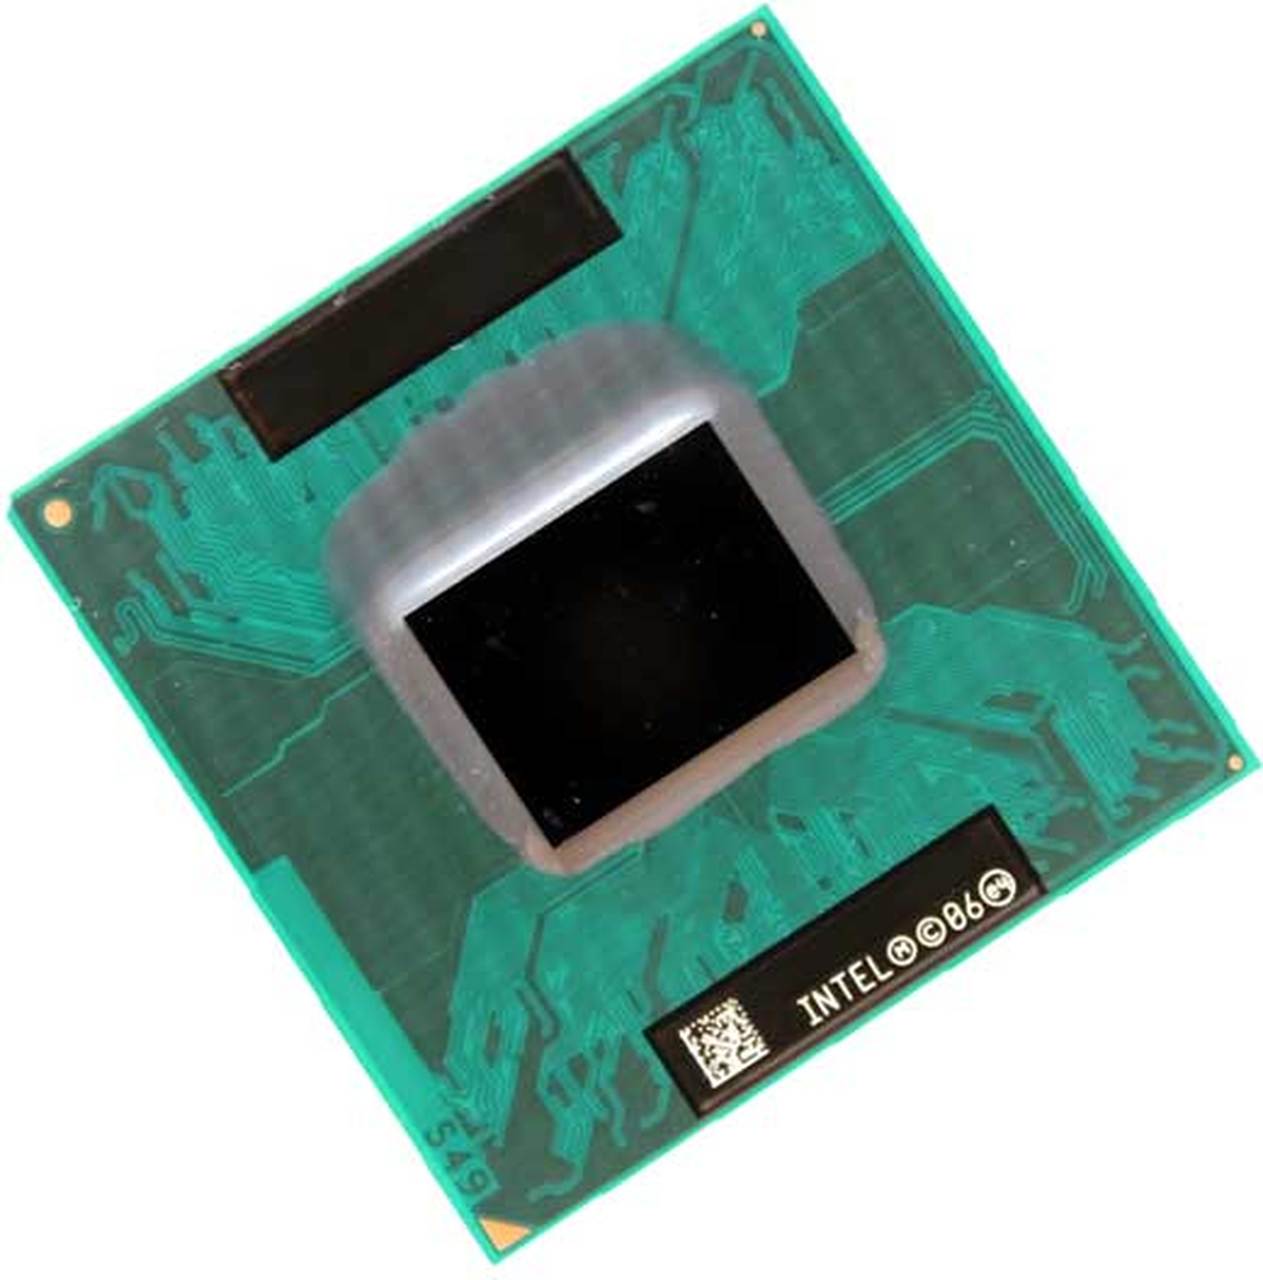 LF80538GF0282M | Intel LF80538GF0282M Core Solo Processor 1.66GHz Processor